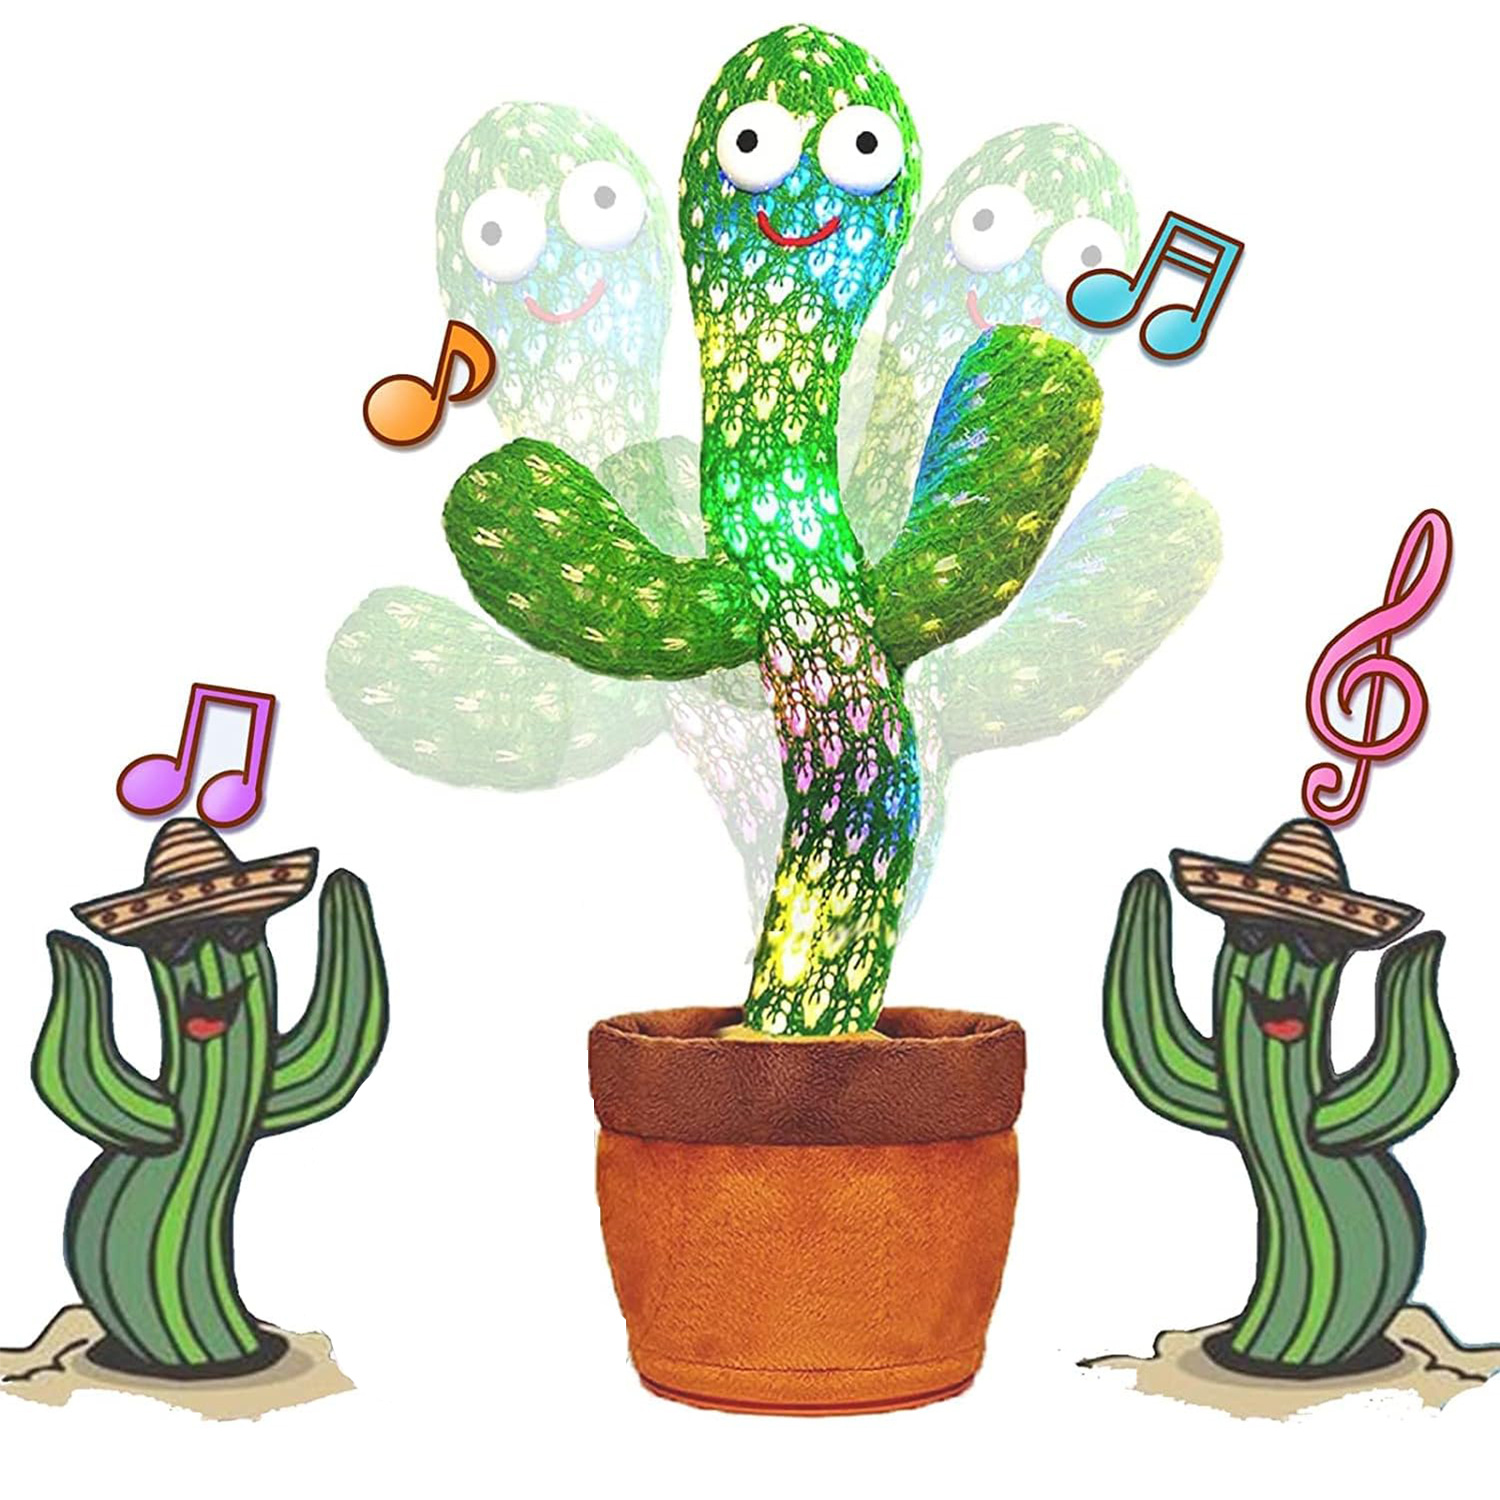 Cactus bailarín repite lo que dices, juguete de peluche electrónico con  iluminación, grabación de cactus cantante y repite tus palabras para  juguetes